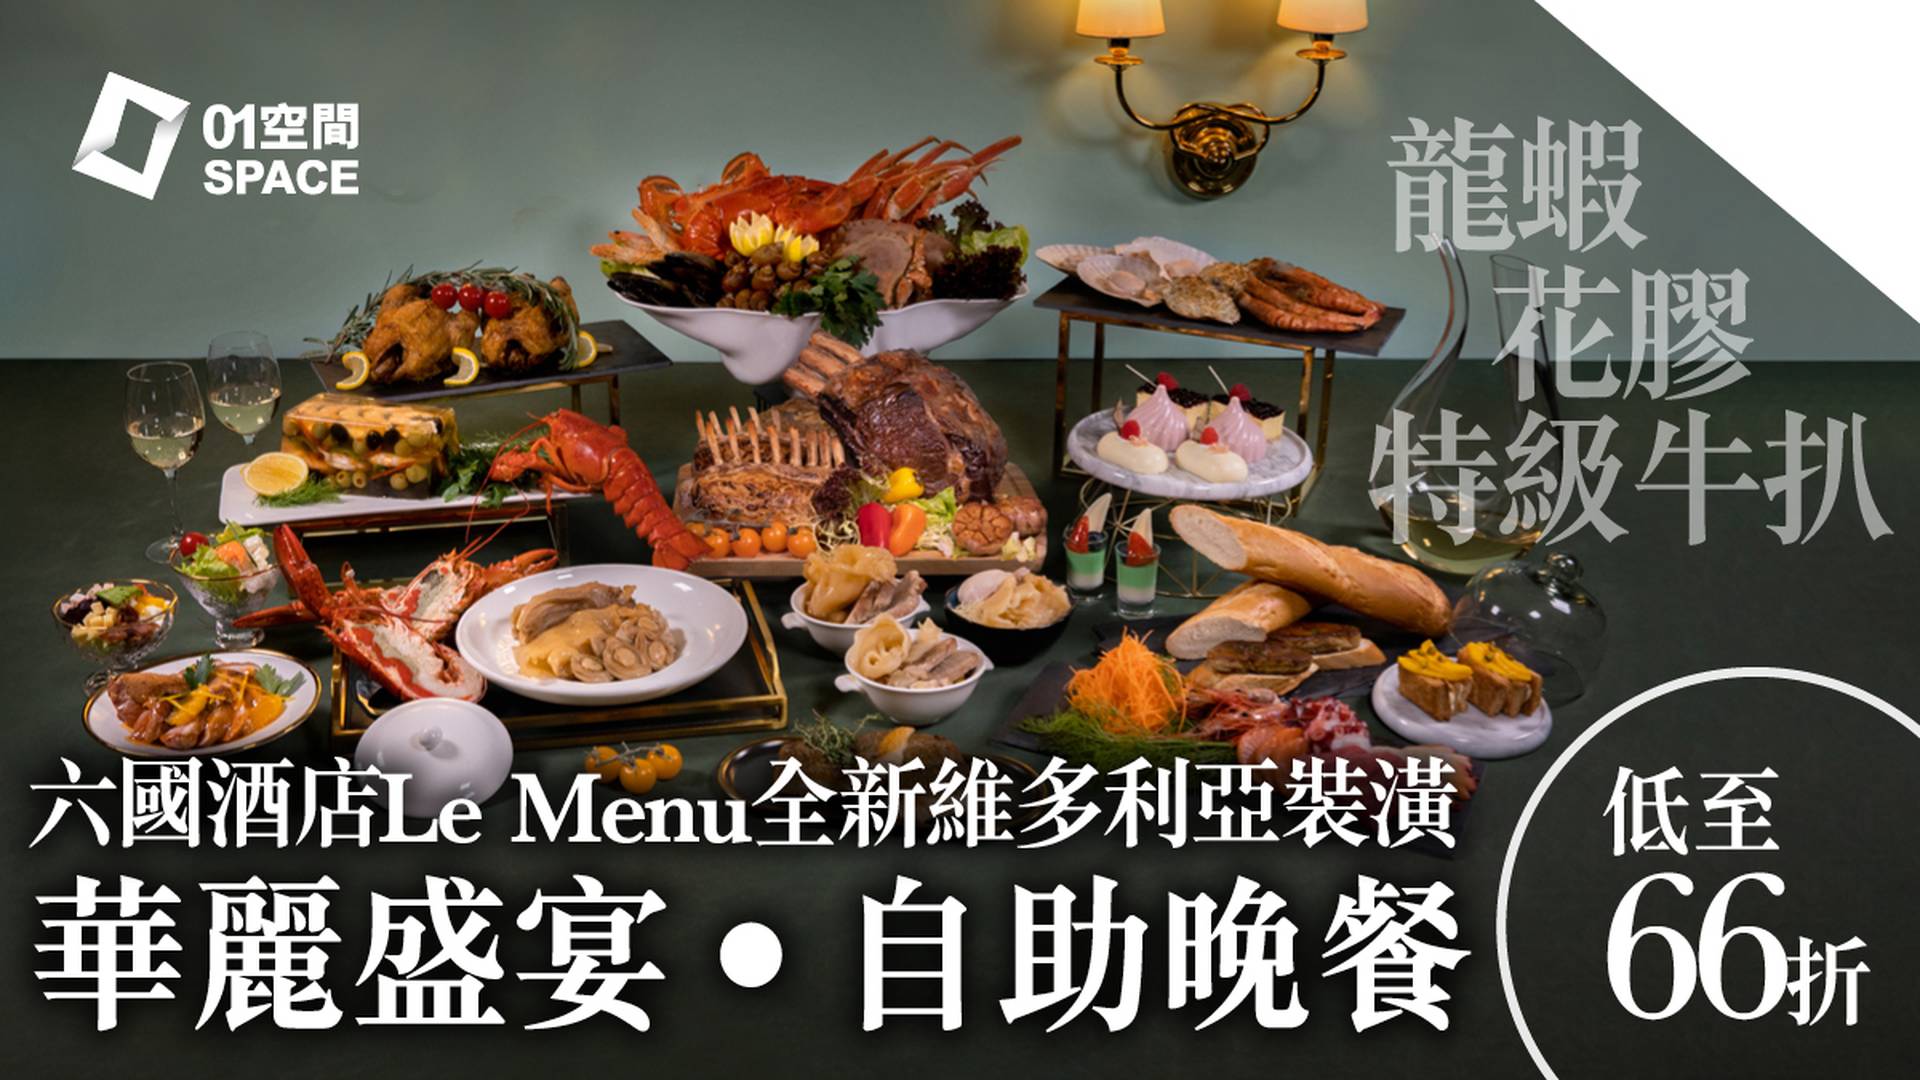 【01空間自助餐優惠 】 六國酒店Le Menu華麗盛宴‧自助晚餐 | 龍蝦 | 花膠 | 特級牛扒 | 低至66折 |